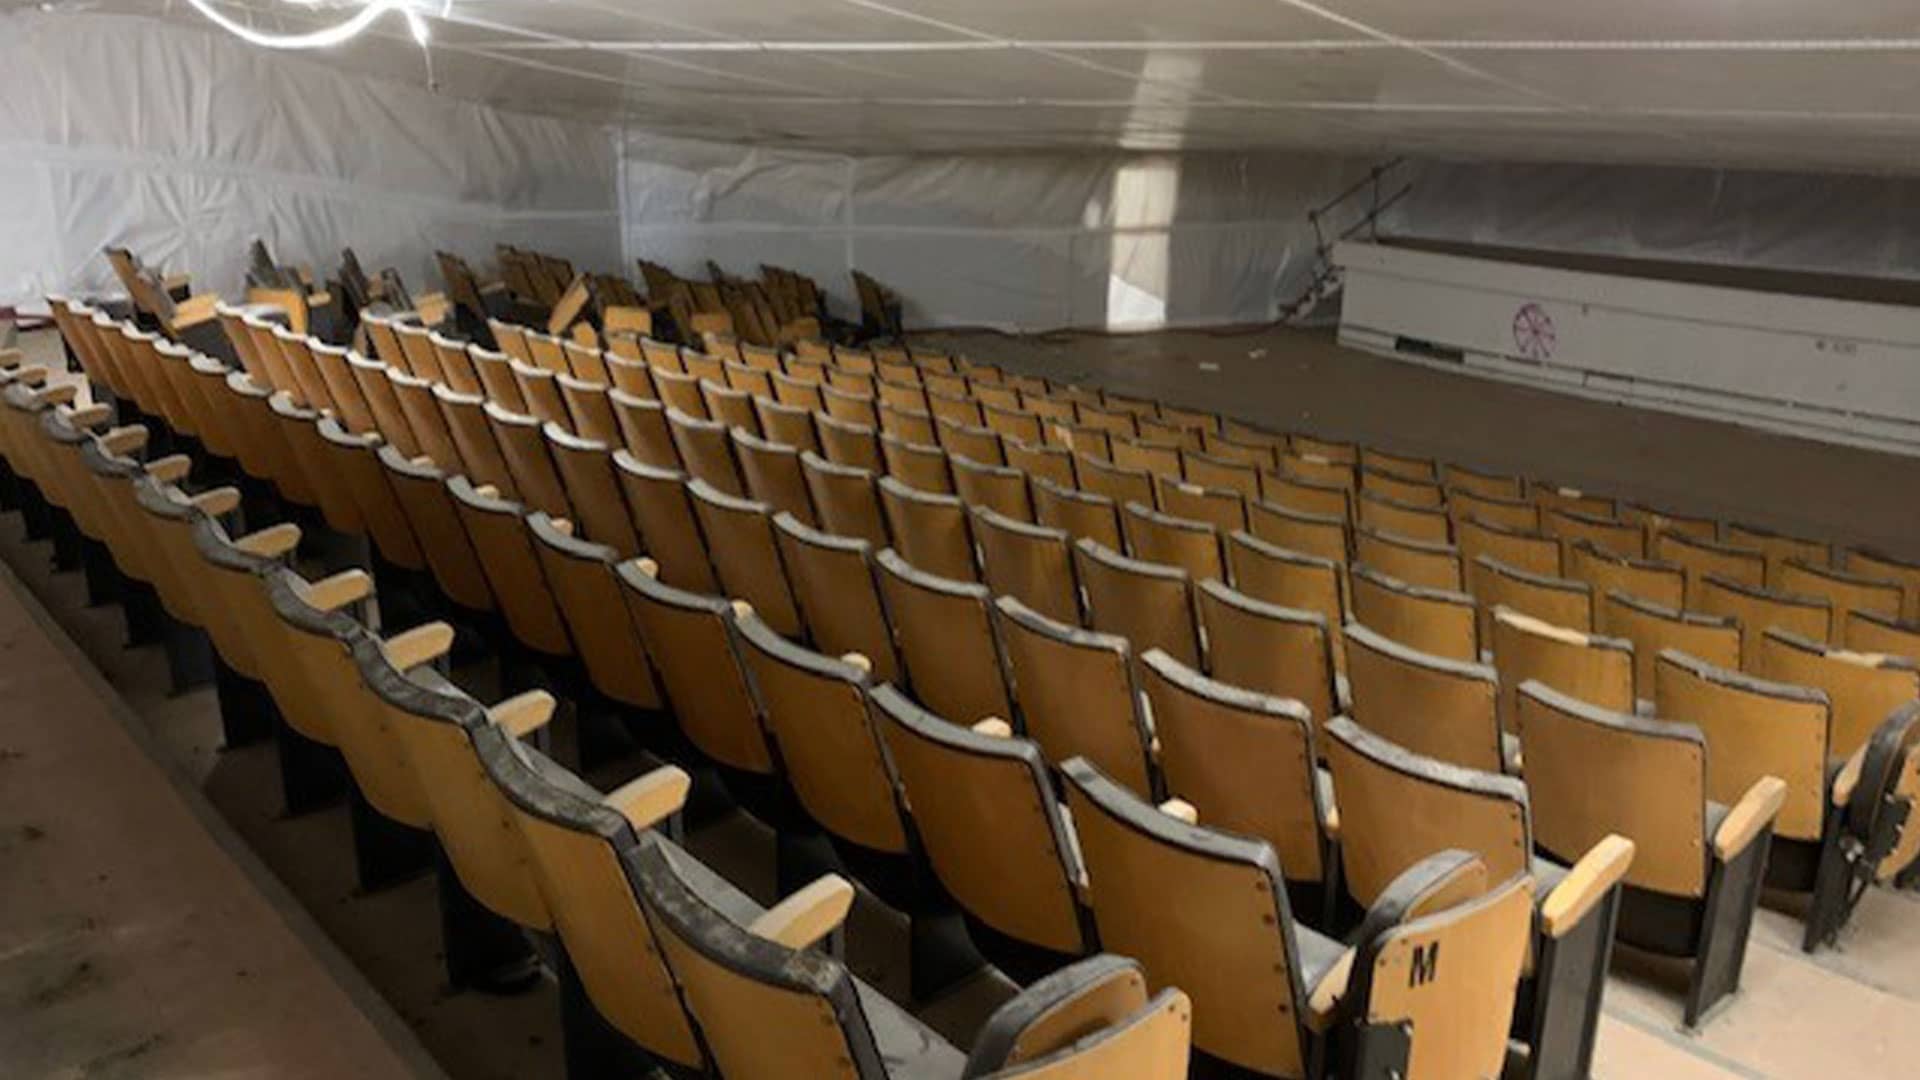 Une seconde vie pour les fauteuils de la salle de projection de l’École d’application de l’infanterie datant de 1967